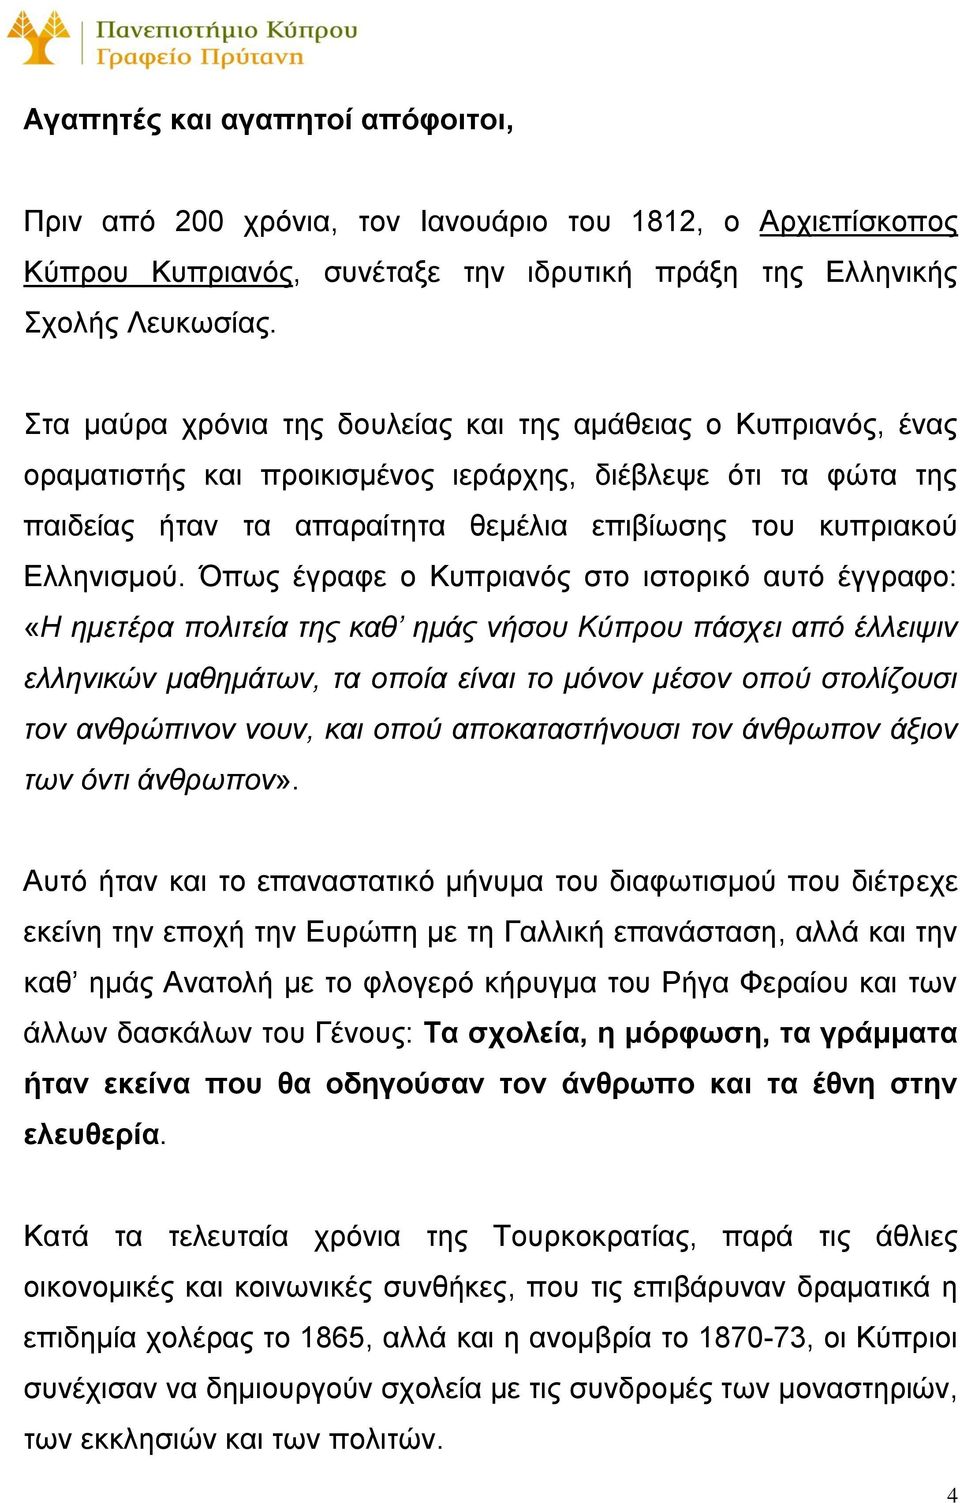 Όπως έγραφε ο Κυπριανός στο ιστορικό αυτό έγγραφο: «Η ημετέρα πολιτεία της καθ ημάς νήσου Κύπρου πάσχει από έλλειψιν ελληνικών μαθημάτων, τα οποία είναι το μόνον μέσον οπού στολίζουσι τον ανθρώπινον